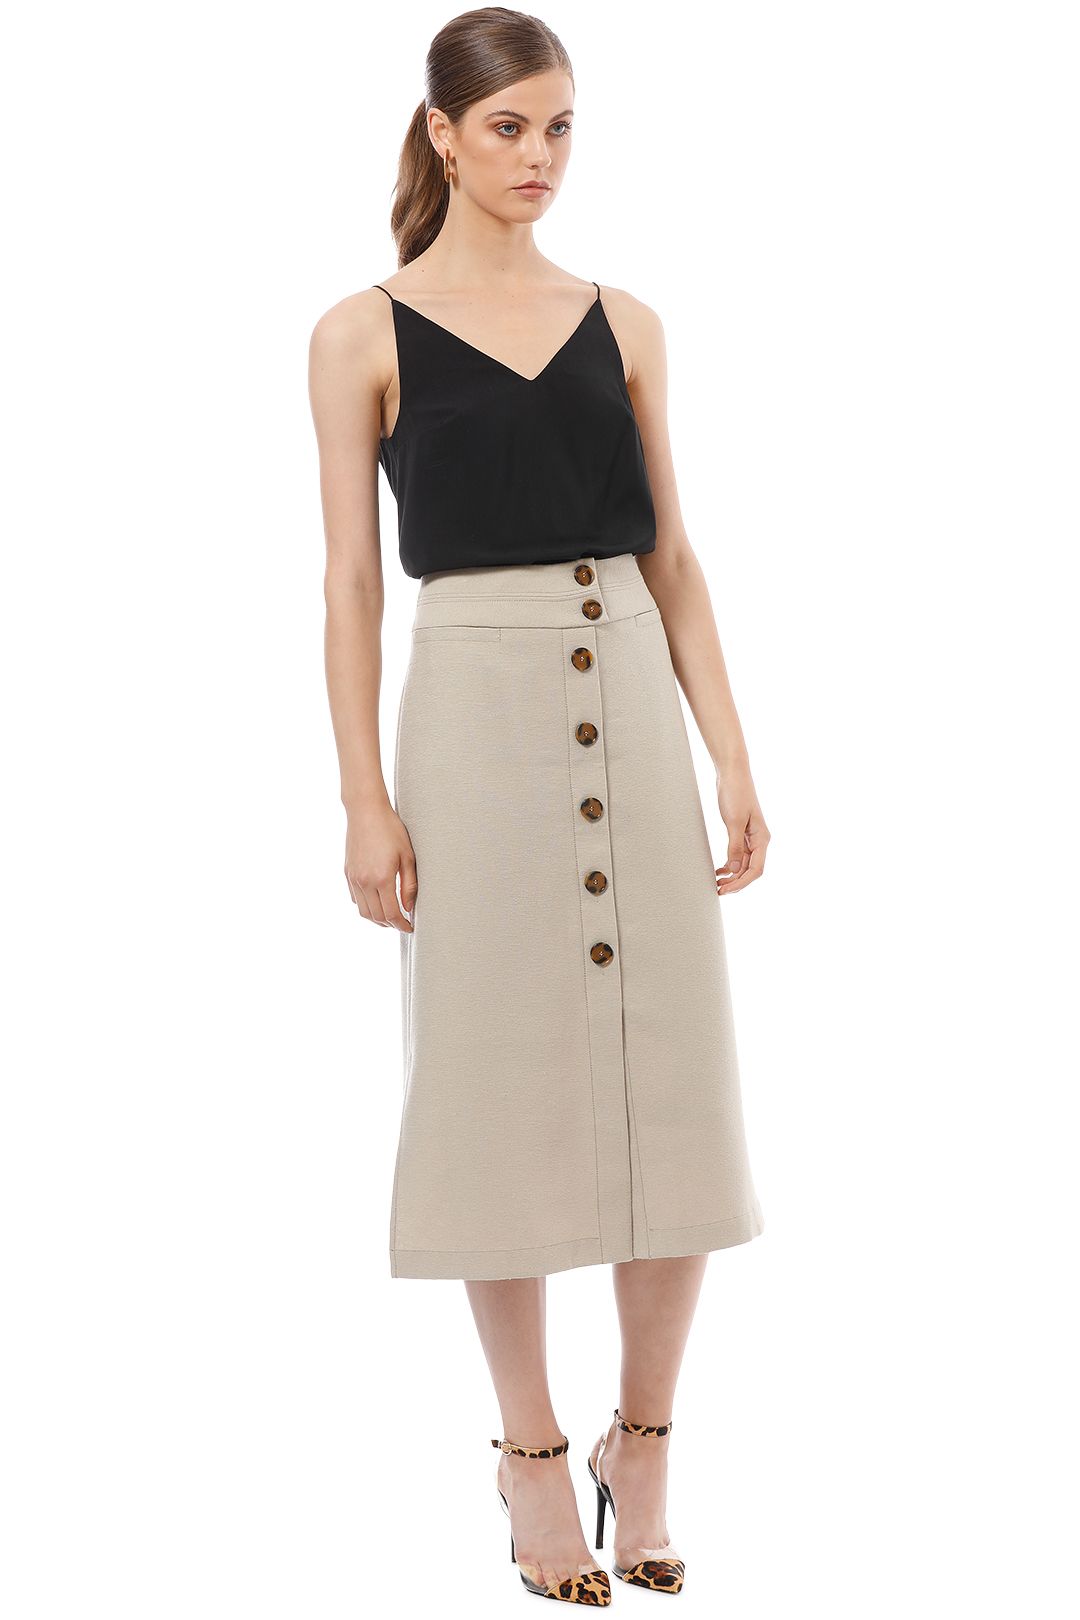 Veronika Maine - Textured Button Up Skirt - Beige - Side